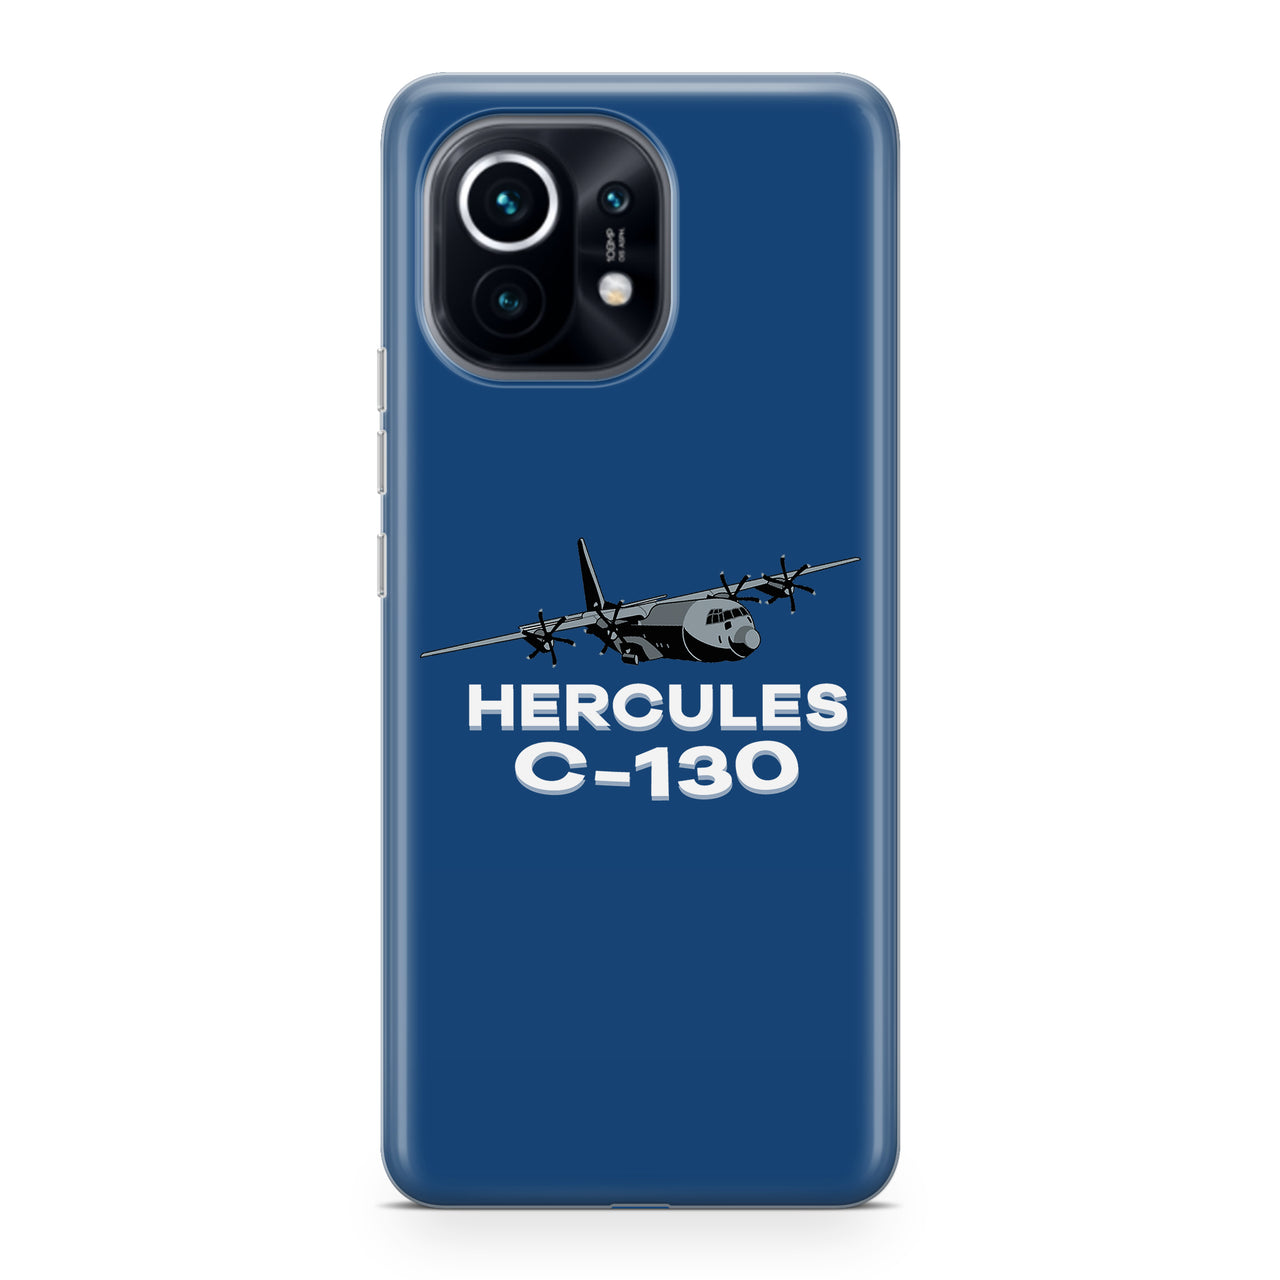 The Hercules C130 Designed Xiaomi Cases